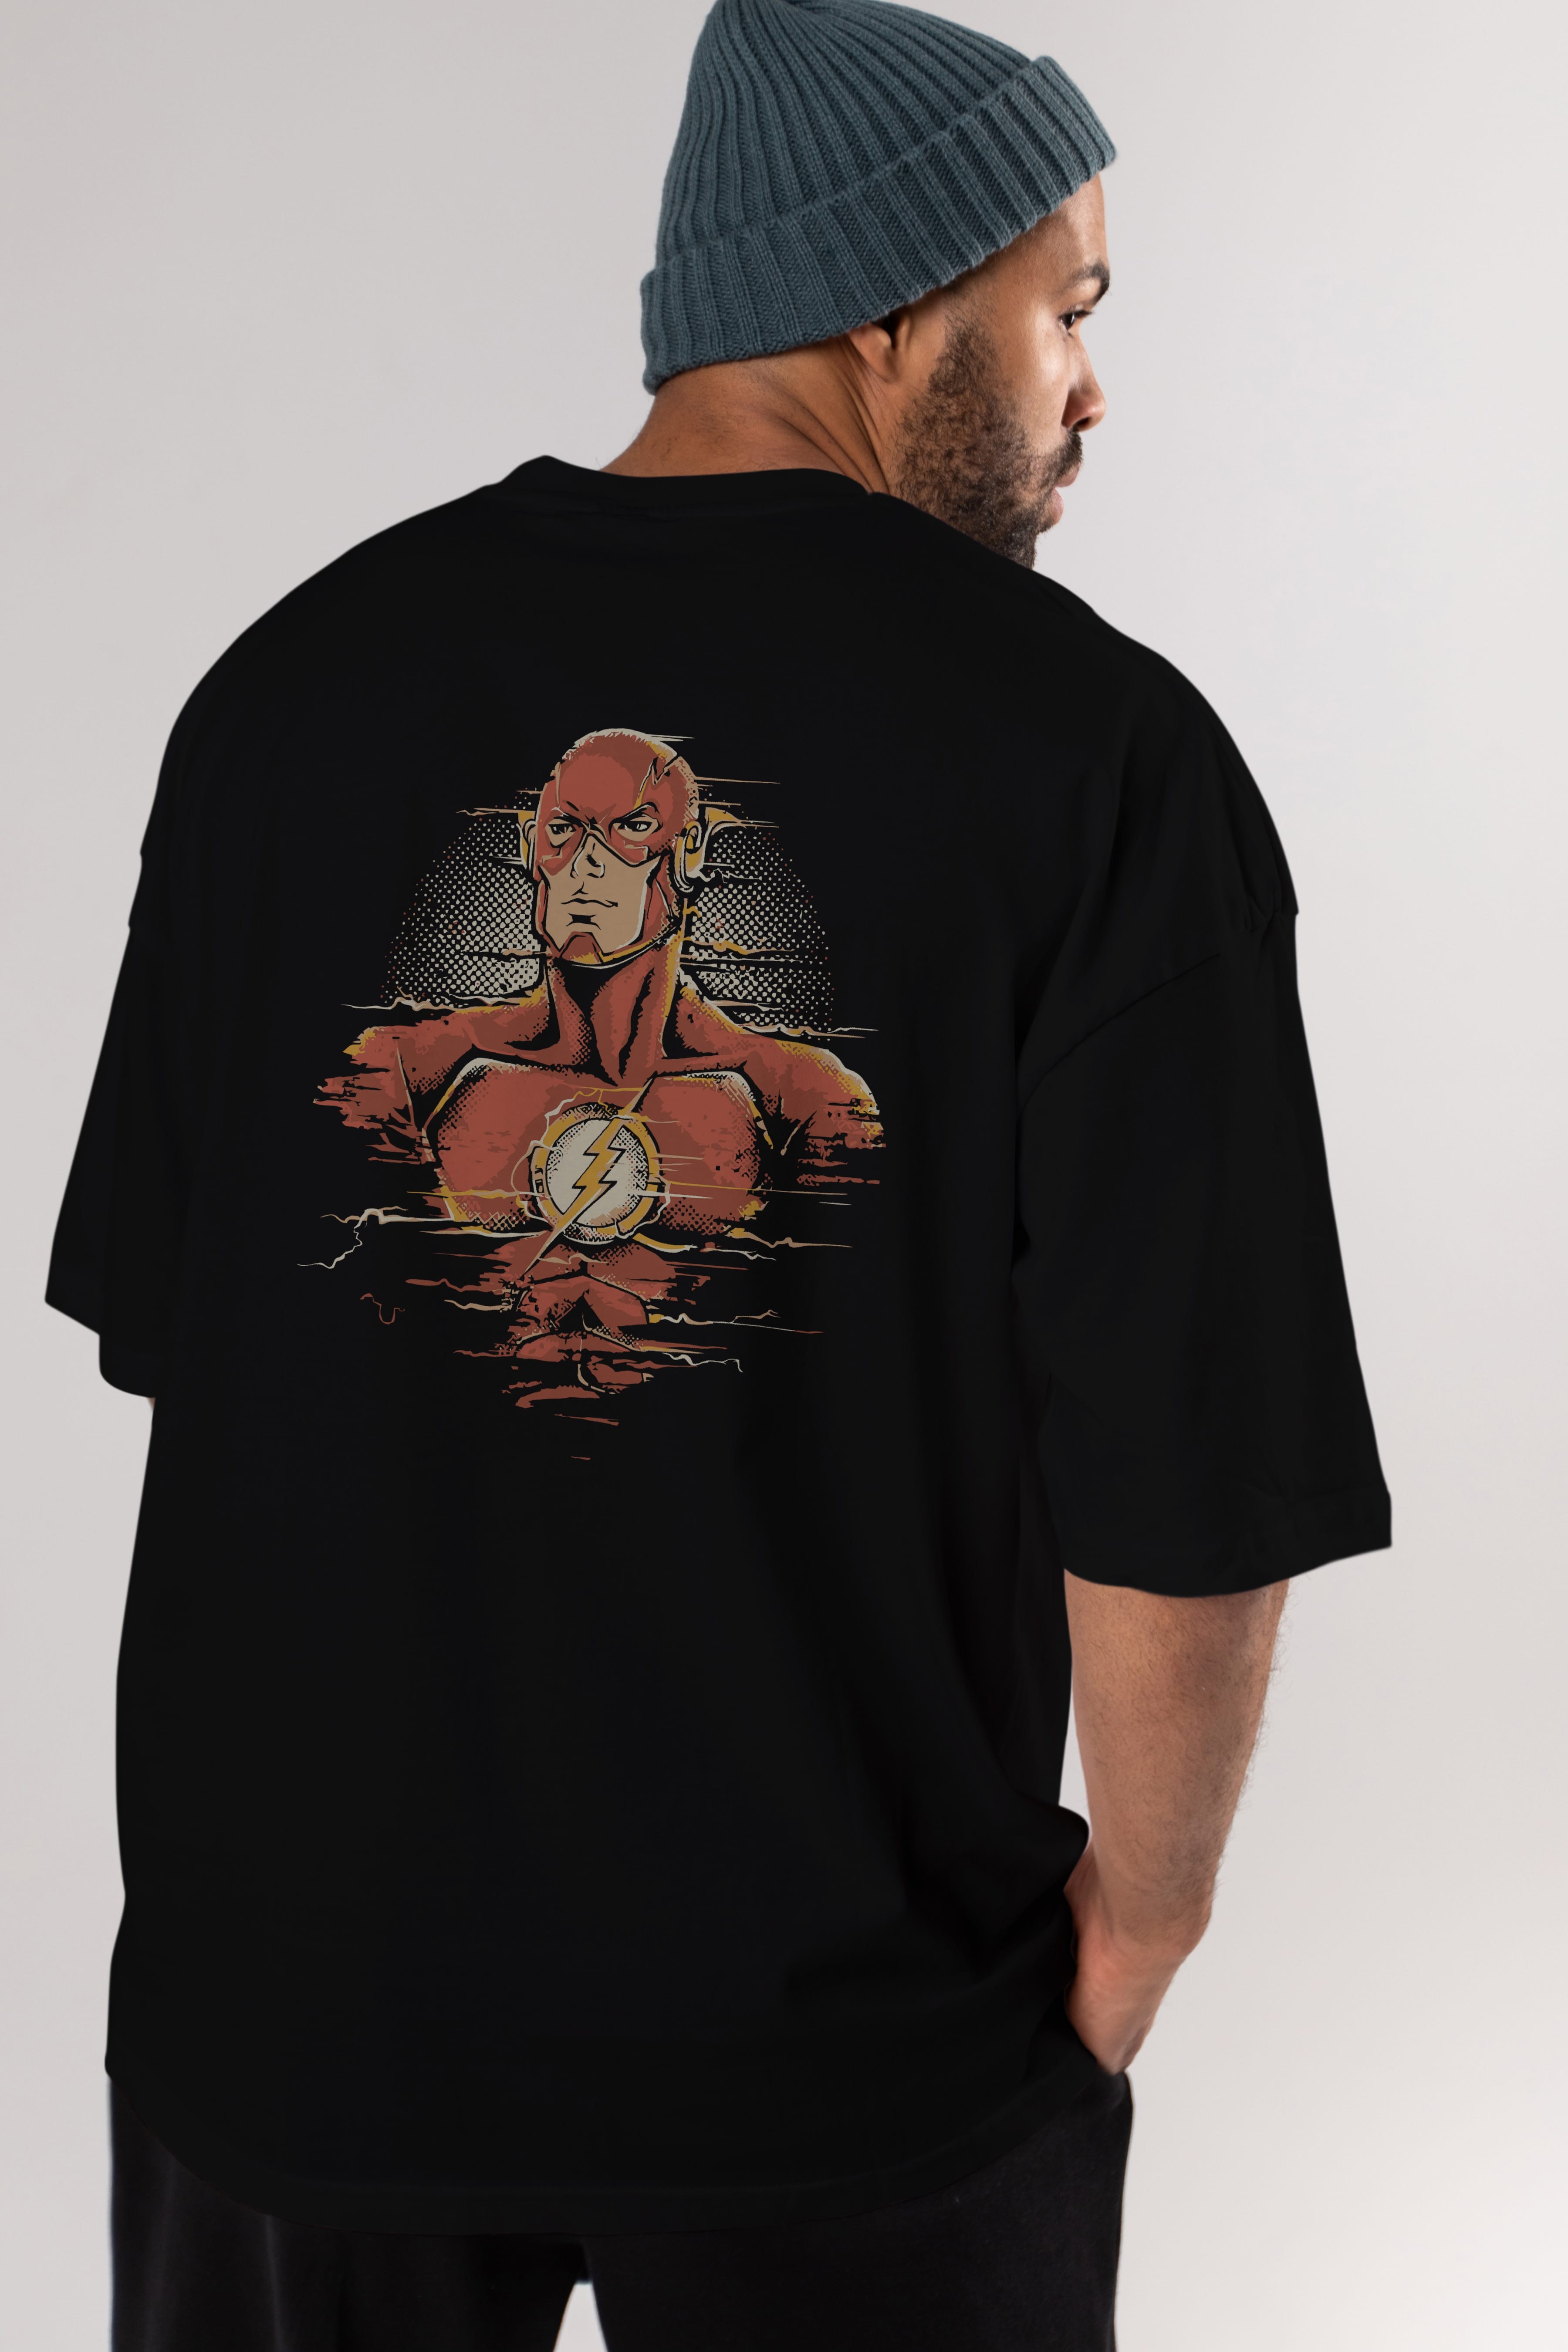 Flash Avengers Arka Baskılı Oversize t-shirt Erkek Kadın Unisex %100 Pamuk Bisiklet Yaka tişort